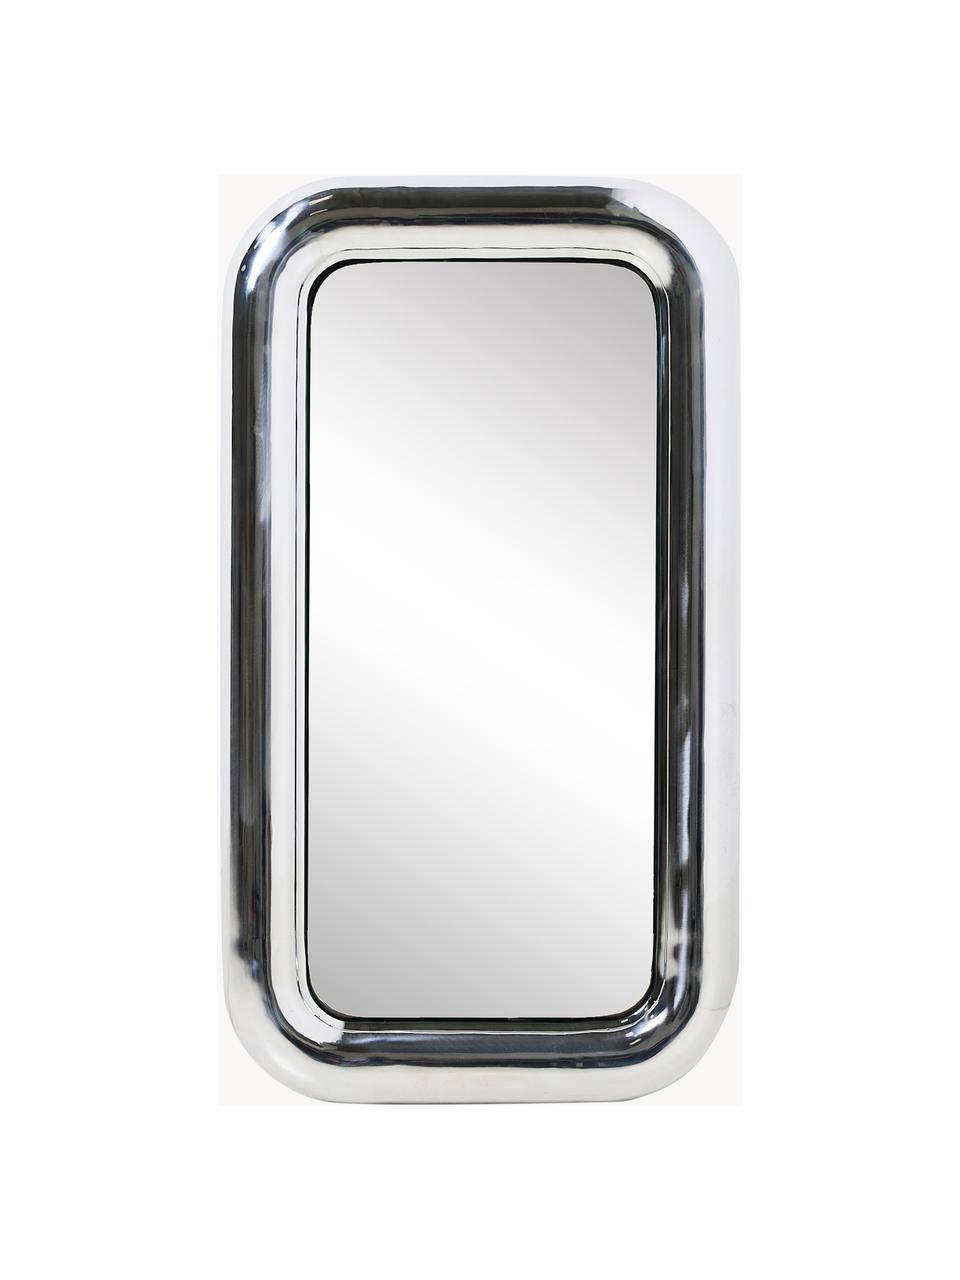 Wandspiegel Chubby mit Stahlrahmen, Spiegelfläche: Spiegelglas, Rahmen: Stahl, verchromt, Silberfarben, B 45 x H 80 cm